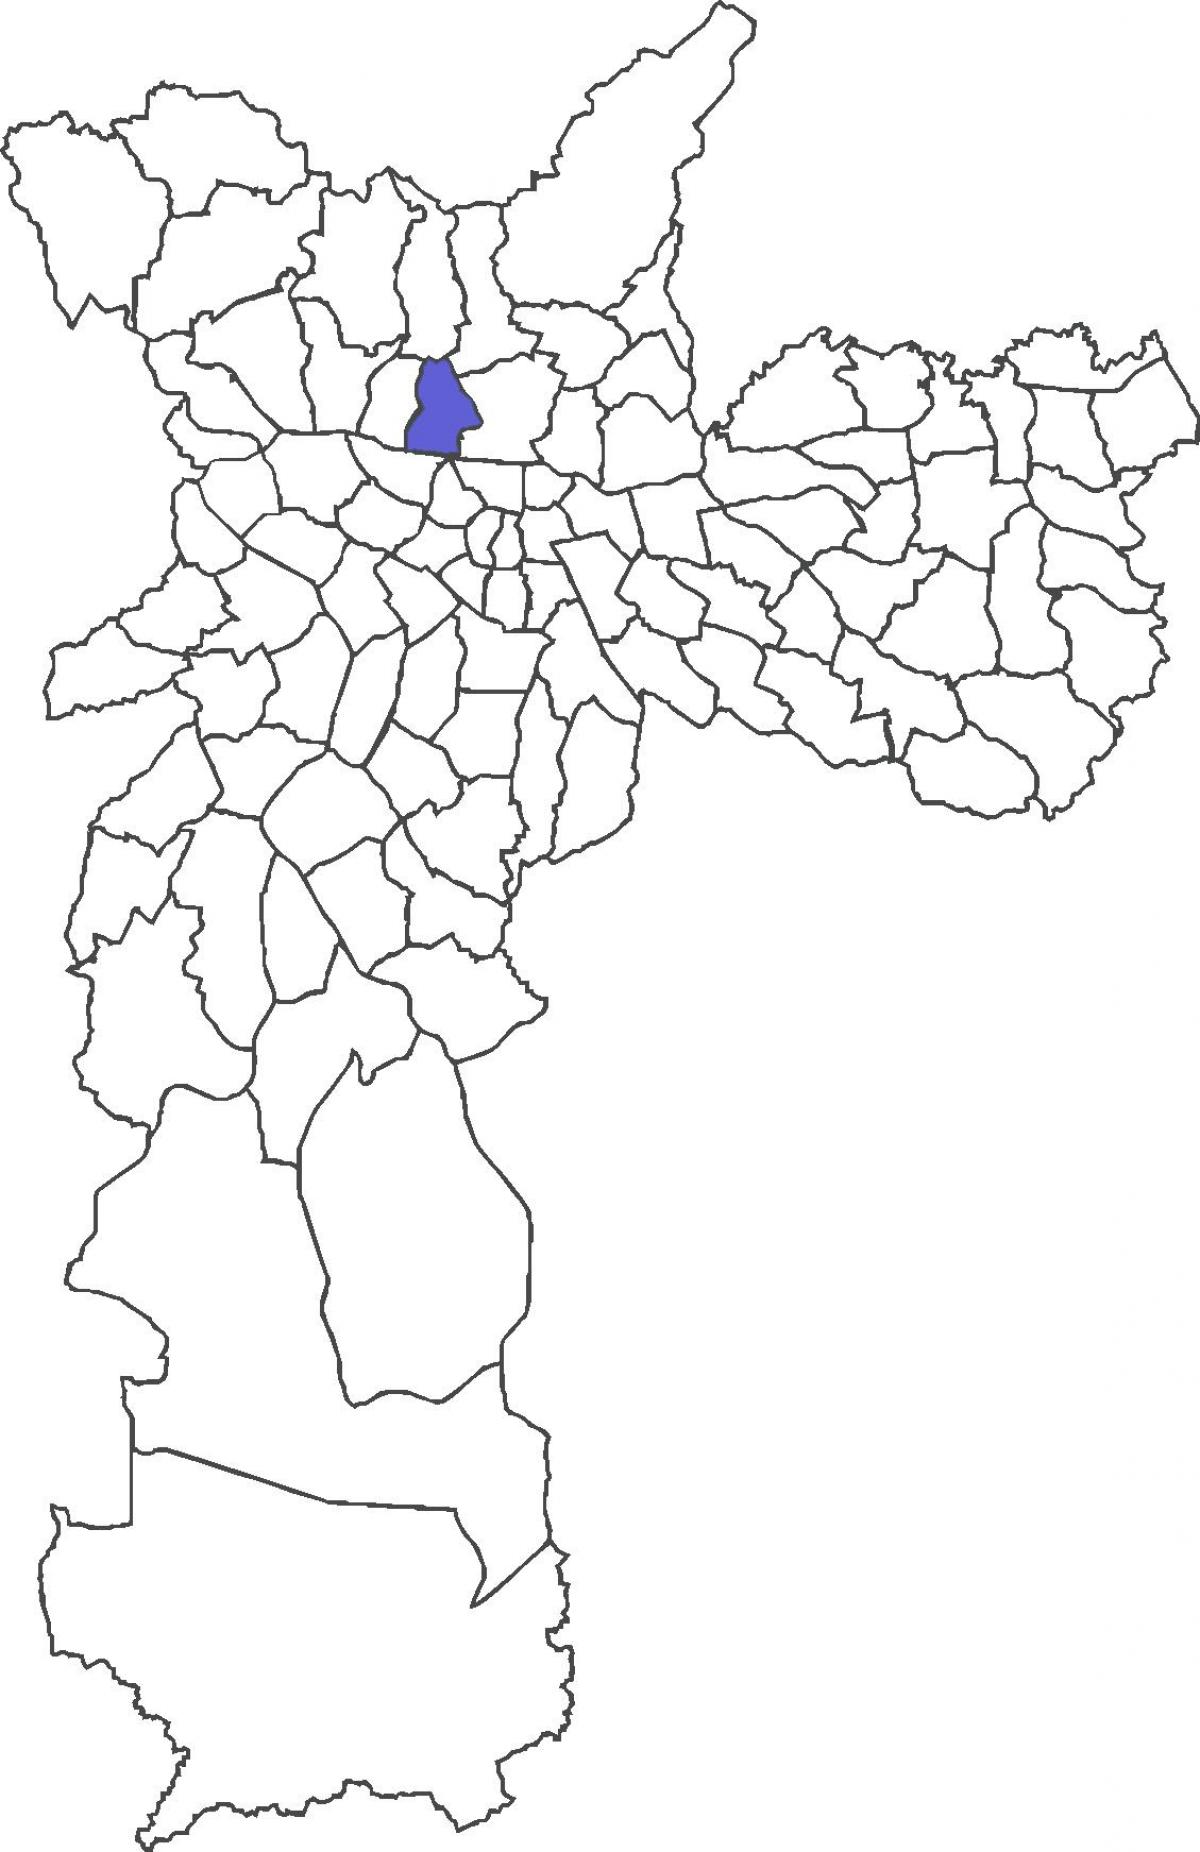 মানচিত্র এর Casa Verde জেলা